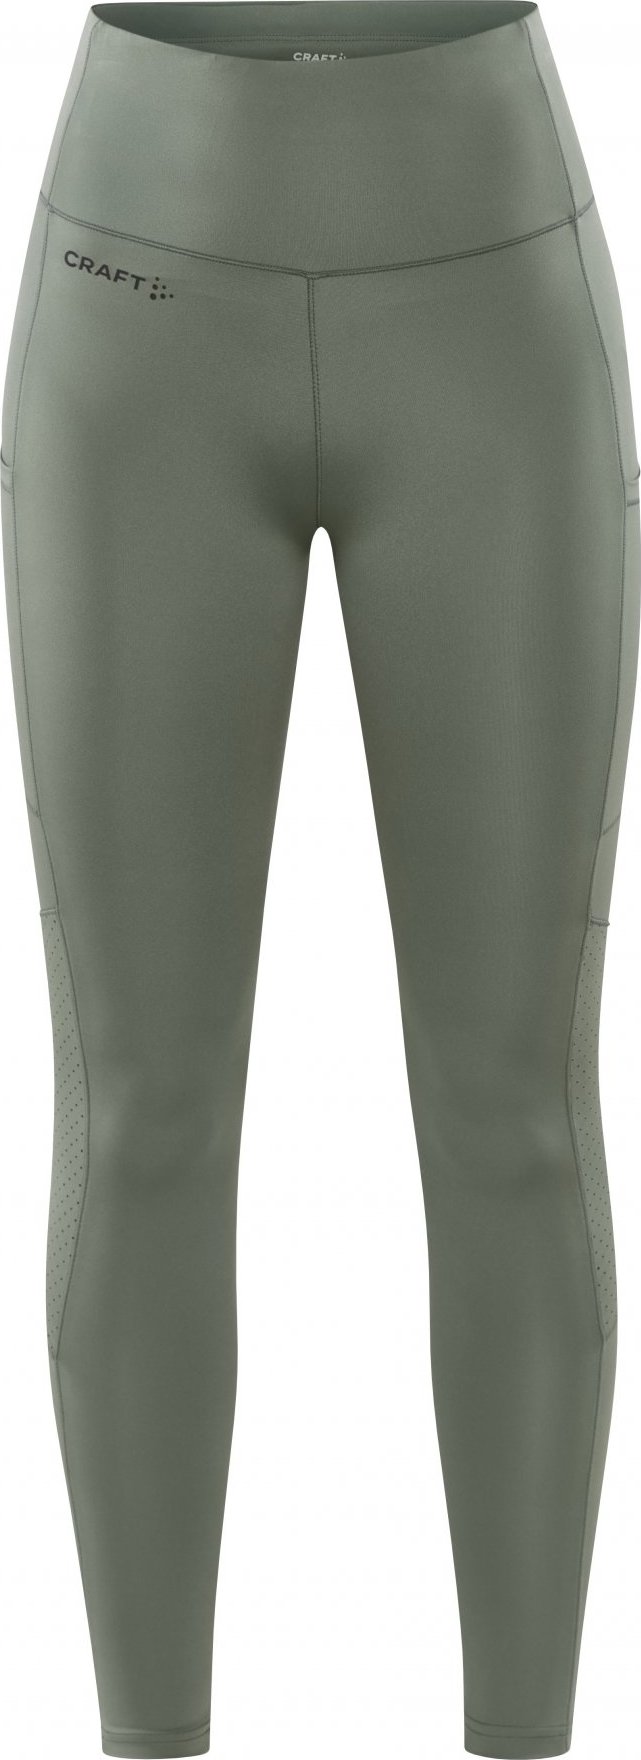 Dámské elastické kalhoty CRAFT Adv Essence 2 zelené Velikost: S